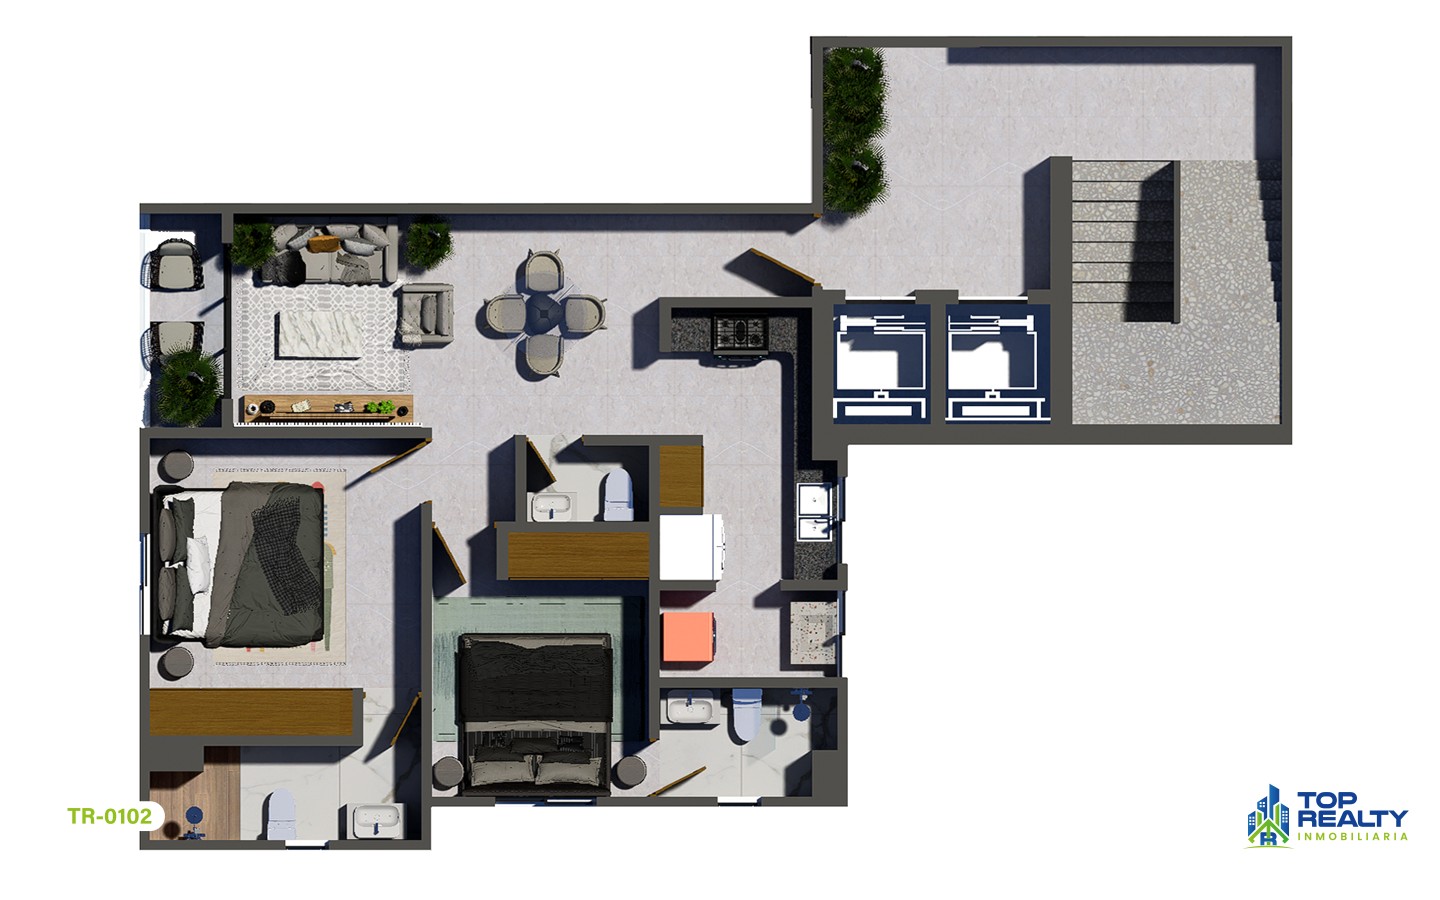 apartamentos - TR-0102-B Estilo y Comodidad: Residencias 2 Hab. con Amenidades Premium 9